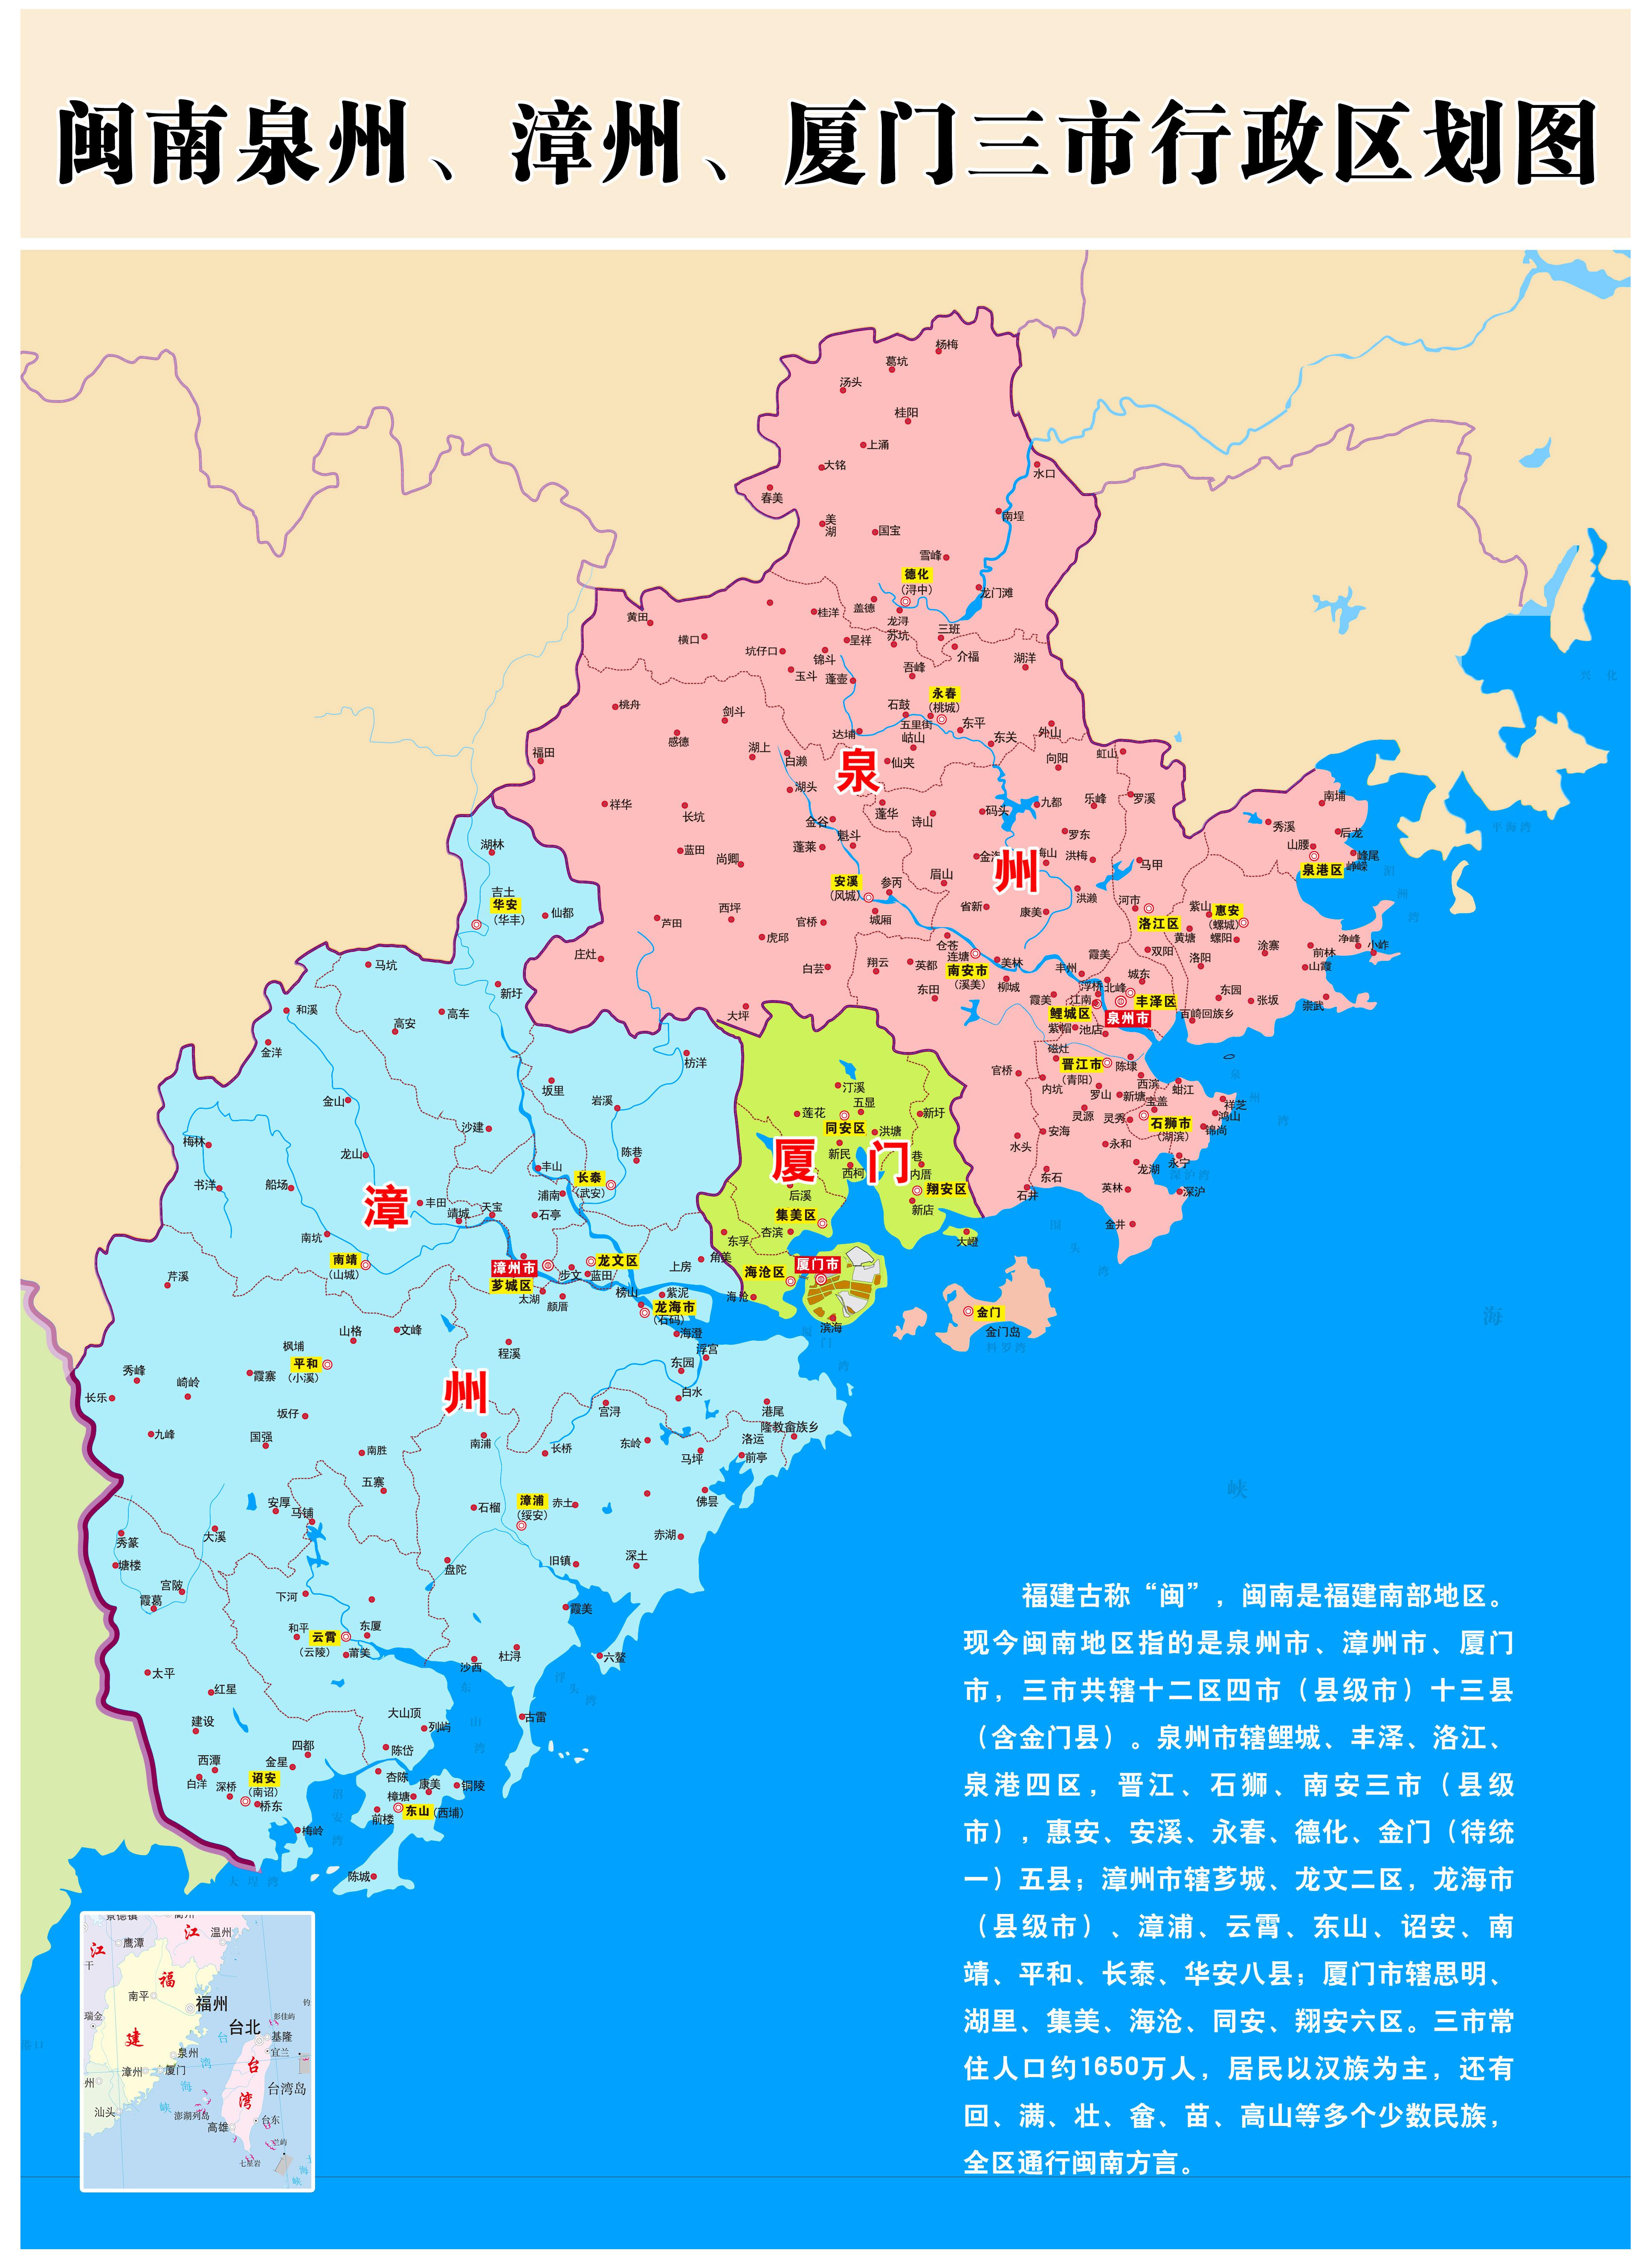 (图2  闽南泉州,漳州,厦门三市地理位置图)